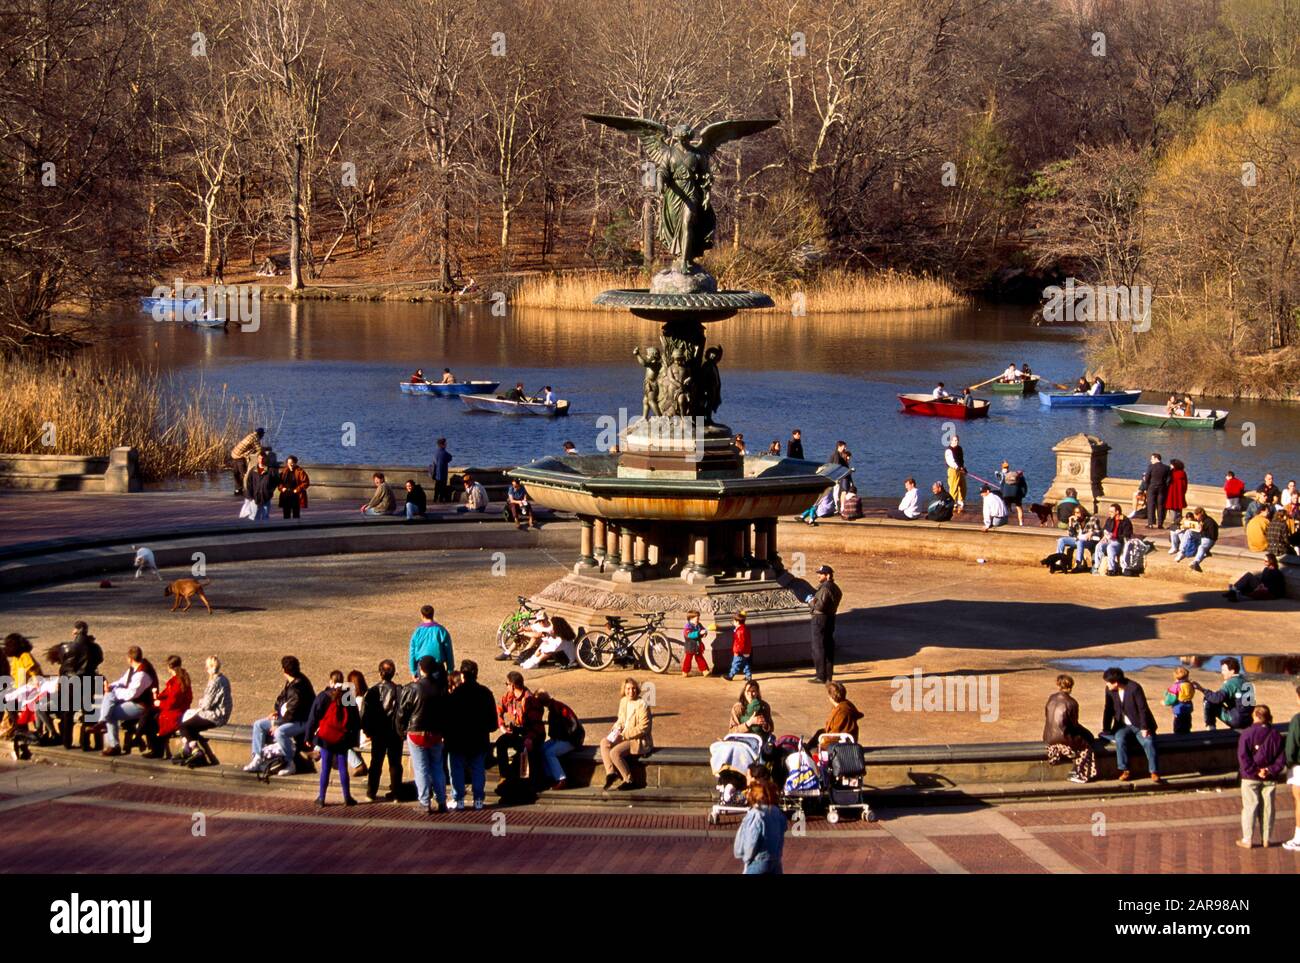 Fußgänger mit mehreren Rassen entspannen sich am Bethesda-Brunnen im Central Park, New York City. Der Brunnen wurde von Emma Stebbins im Jahr 1868 entworfen. Sie war die erste Frau, die eine öffentliche kommission für ein großes Kunstwerk in New York City erhielt. Die bronzene, achtfussige Statue zeigt einen weiblichen geflügelten Engel, der sich auf der Spitze des Brunnens hinaufberührt. Unter ihr befinden sich vier 4-Fuß-Cherubs, die Temperance, Reinheit, Gesundheit und Frieden repräsentieren Stockfoto